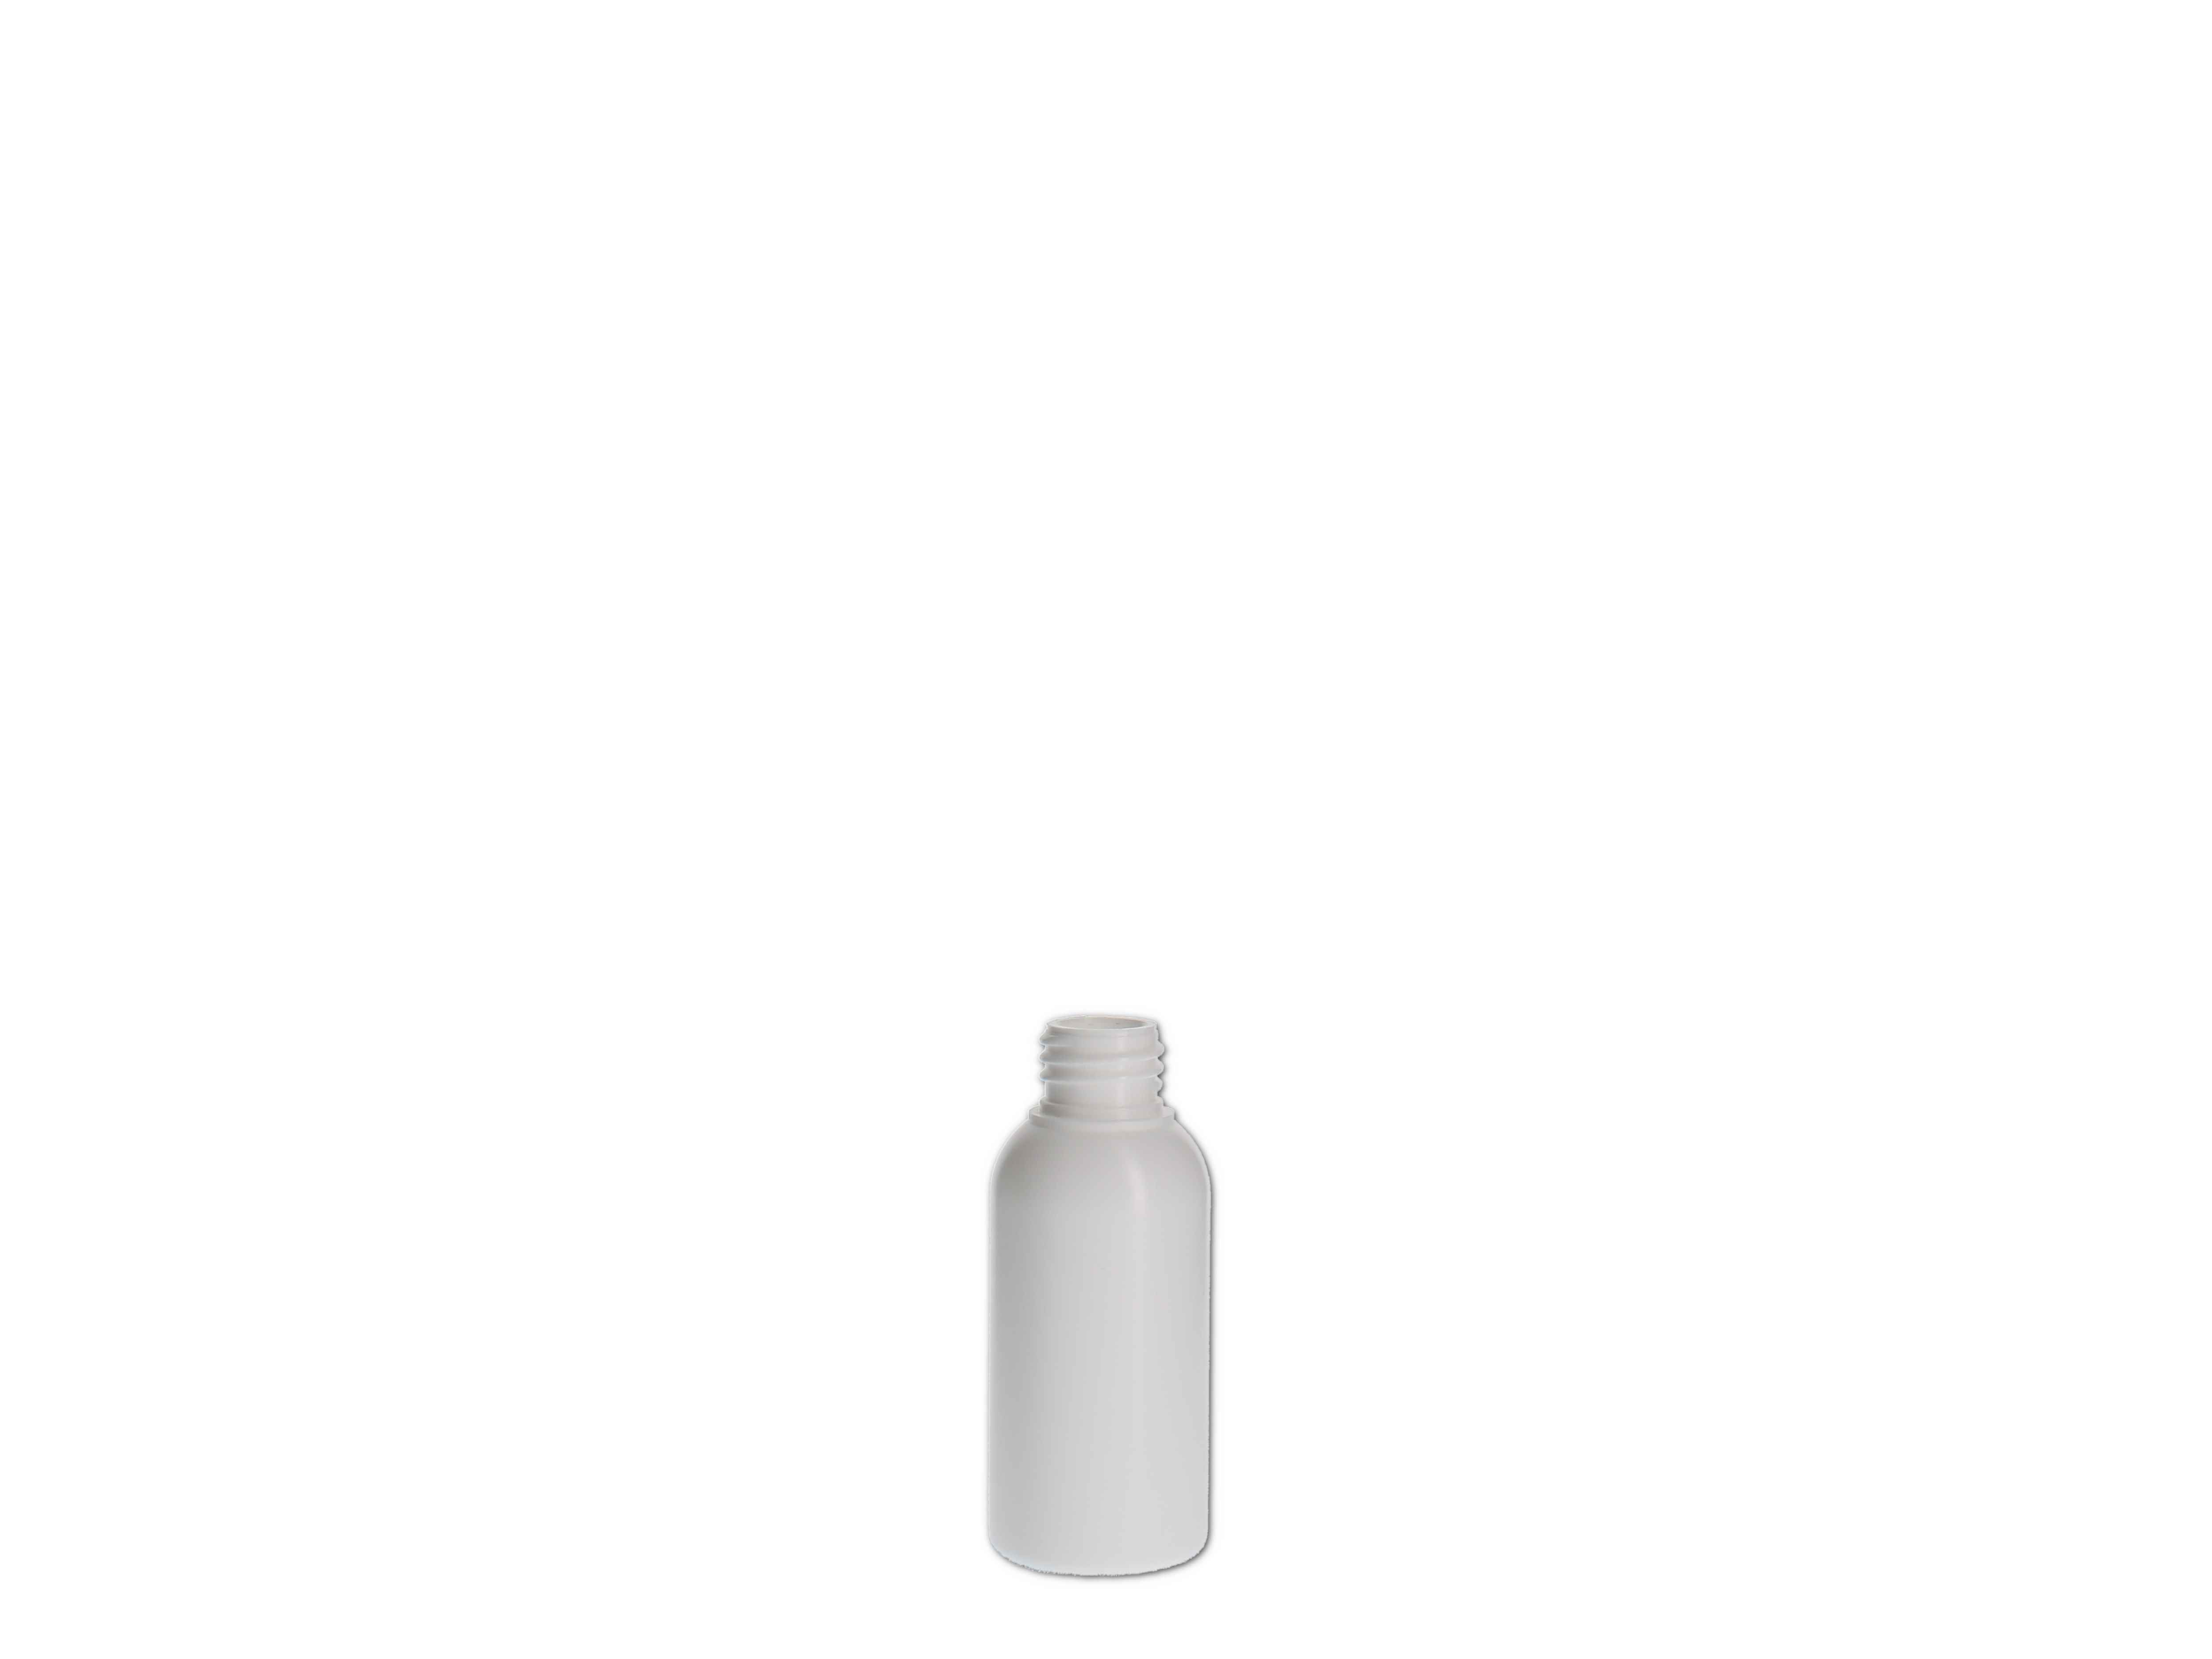    Kosmetikflasche, Kunststoff weiß, rund 50ml